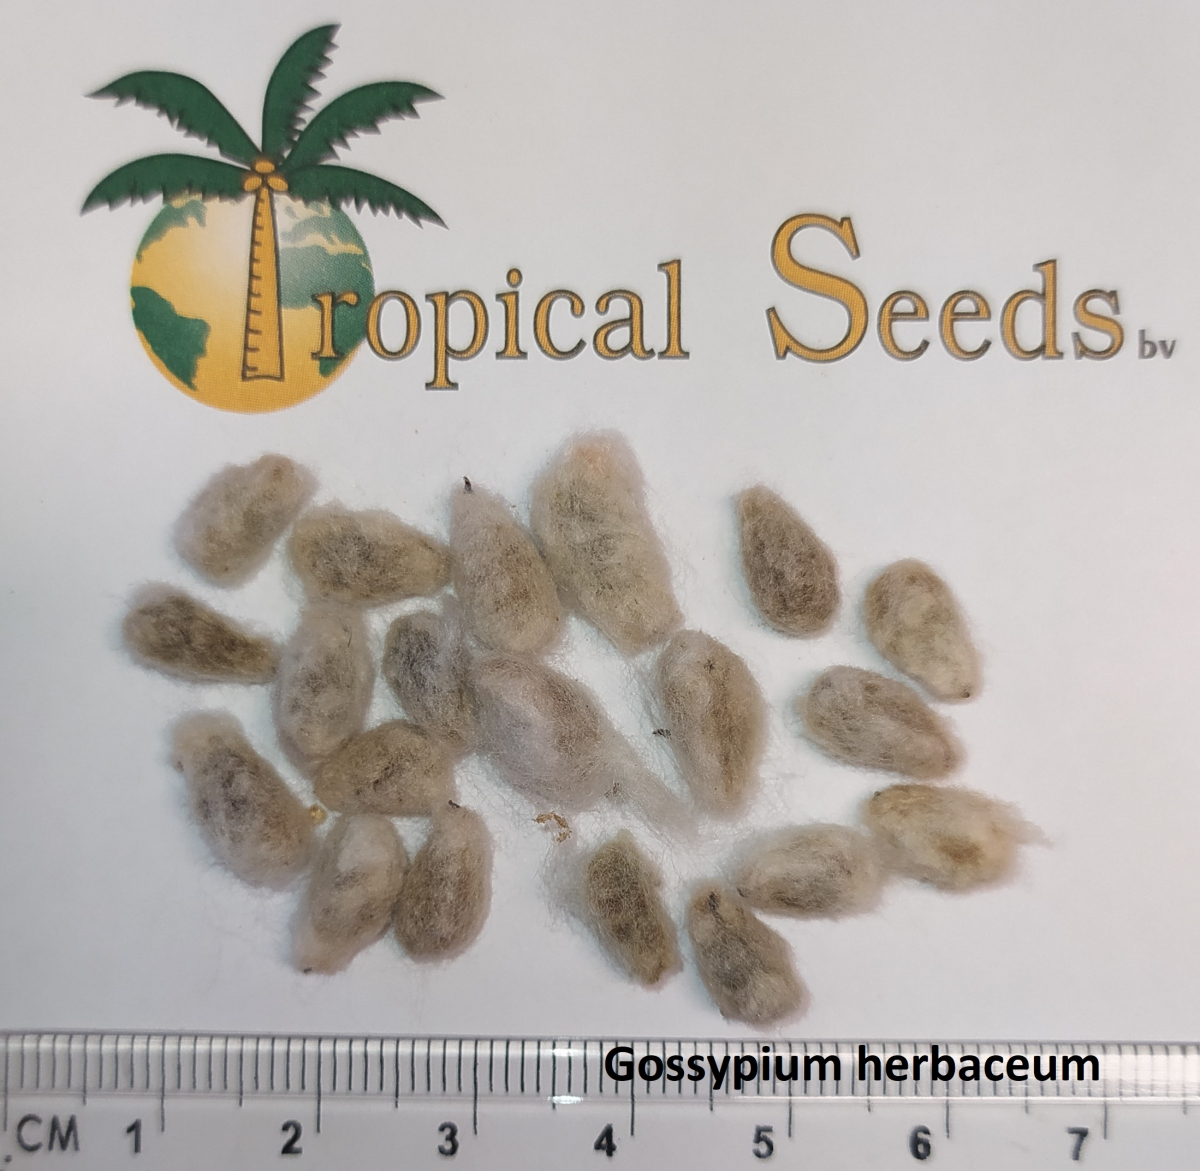 Gossypium herbaceum Seeds